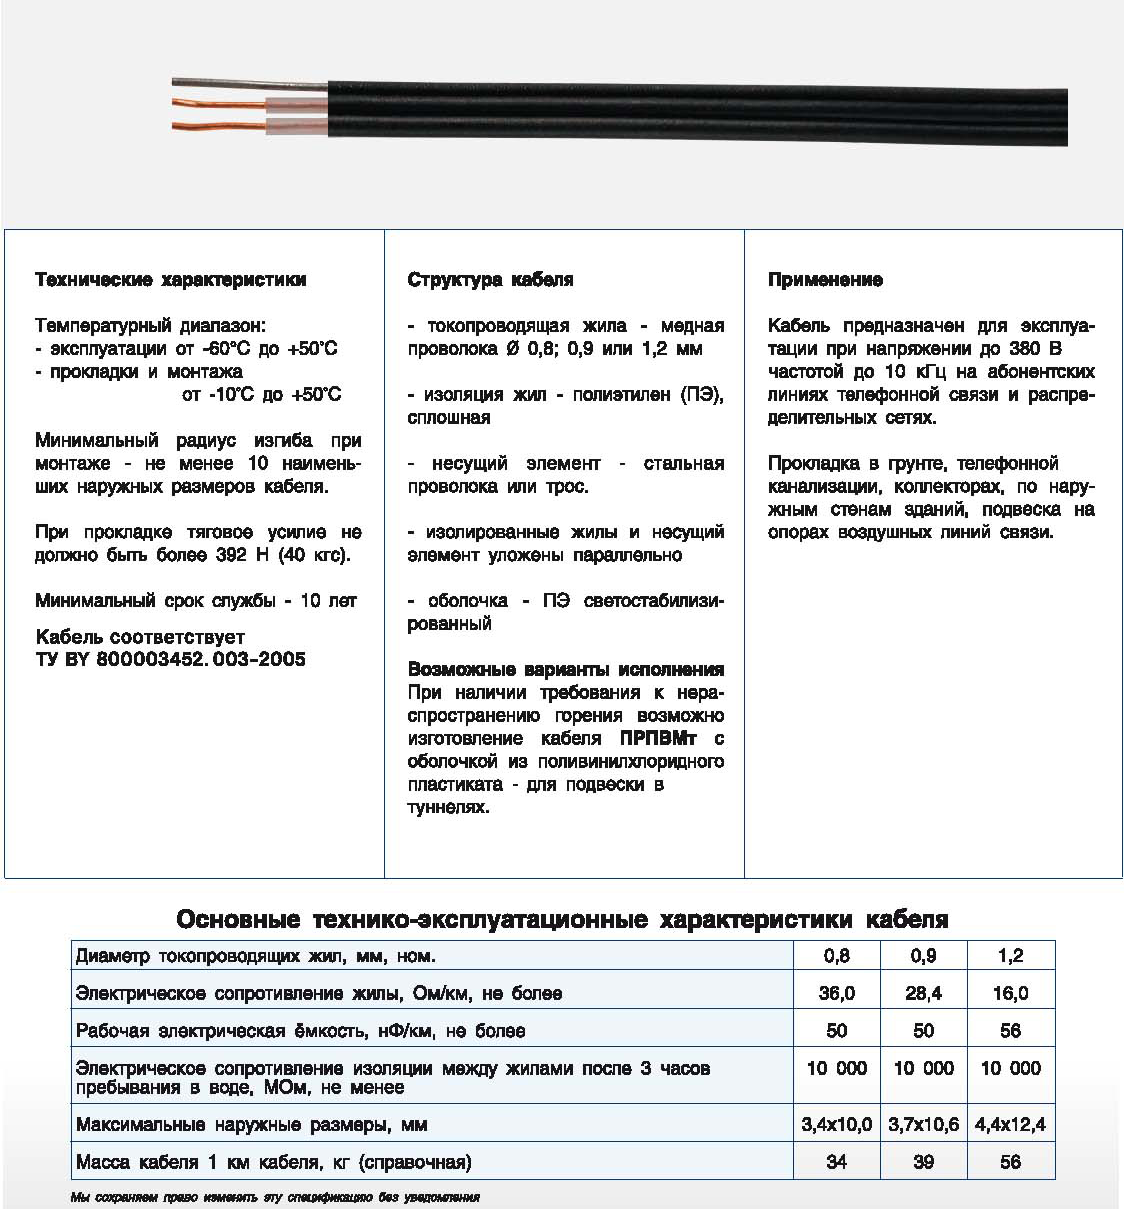 Кабель ПРППМт - кабель связи и радиофикации